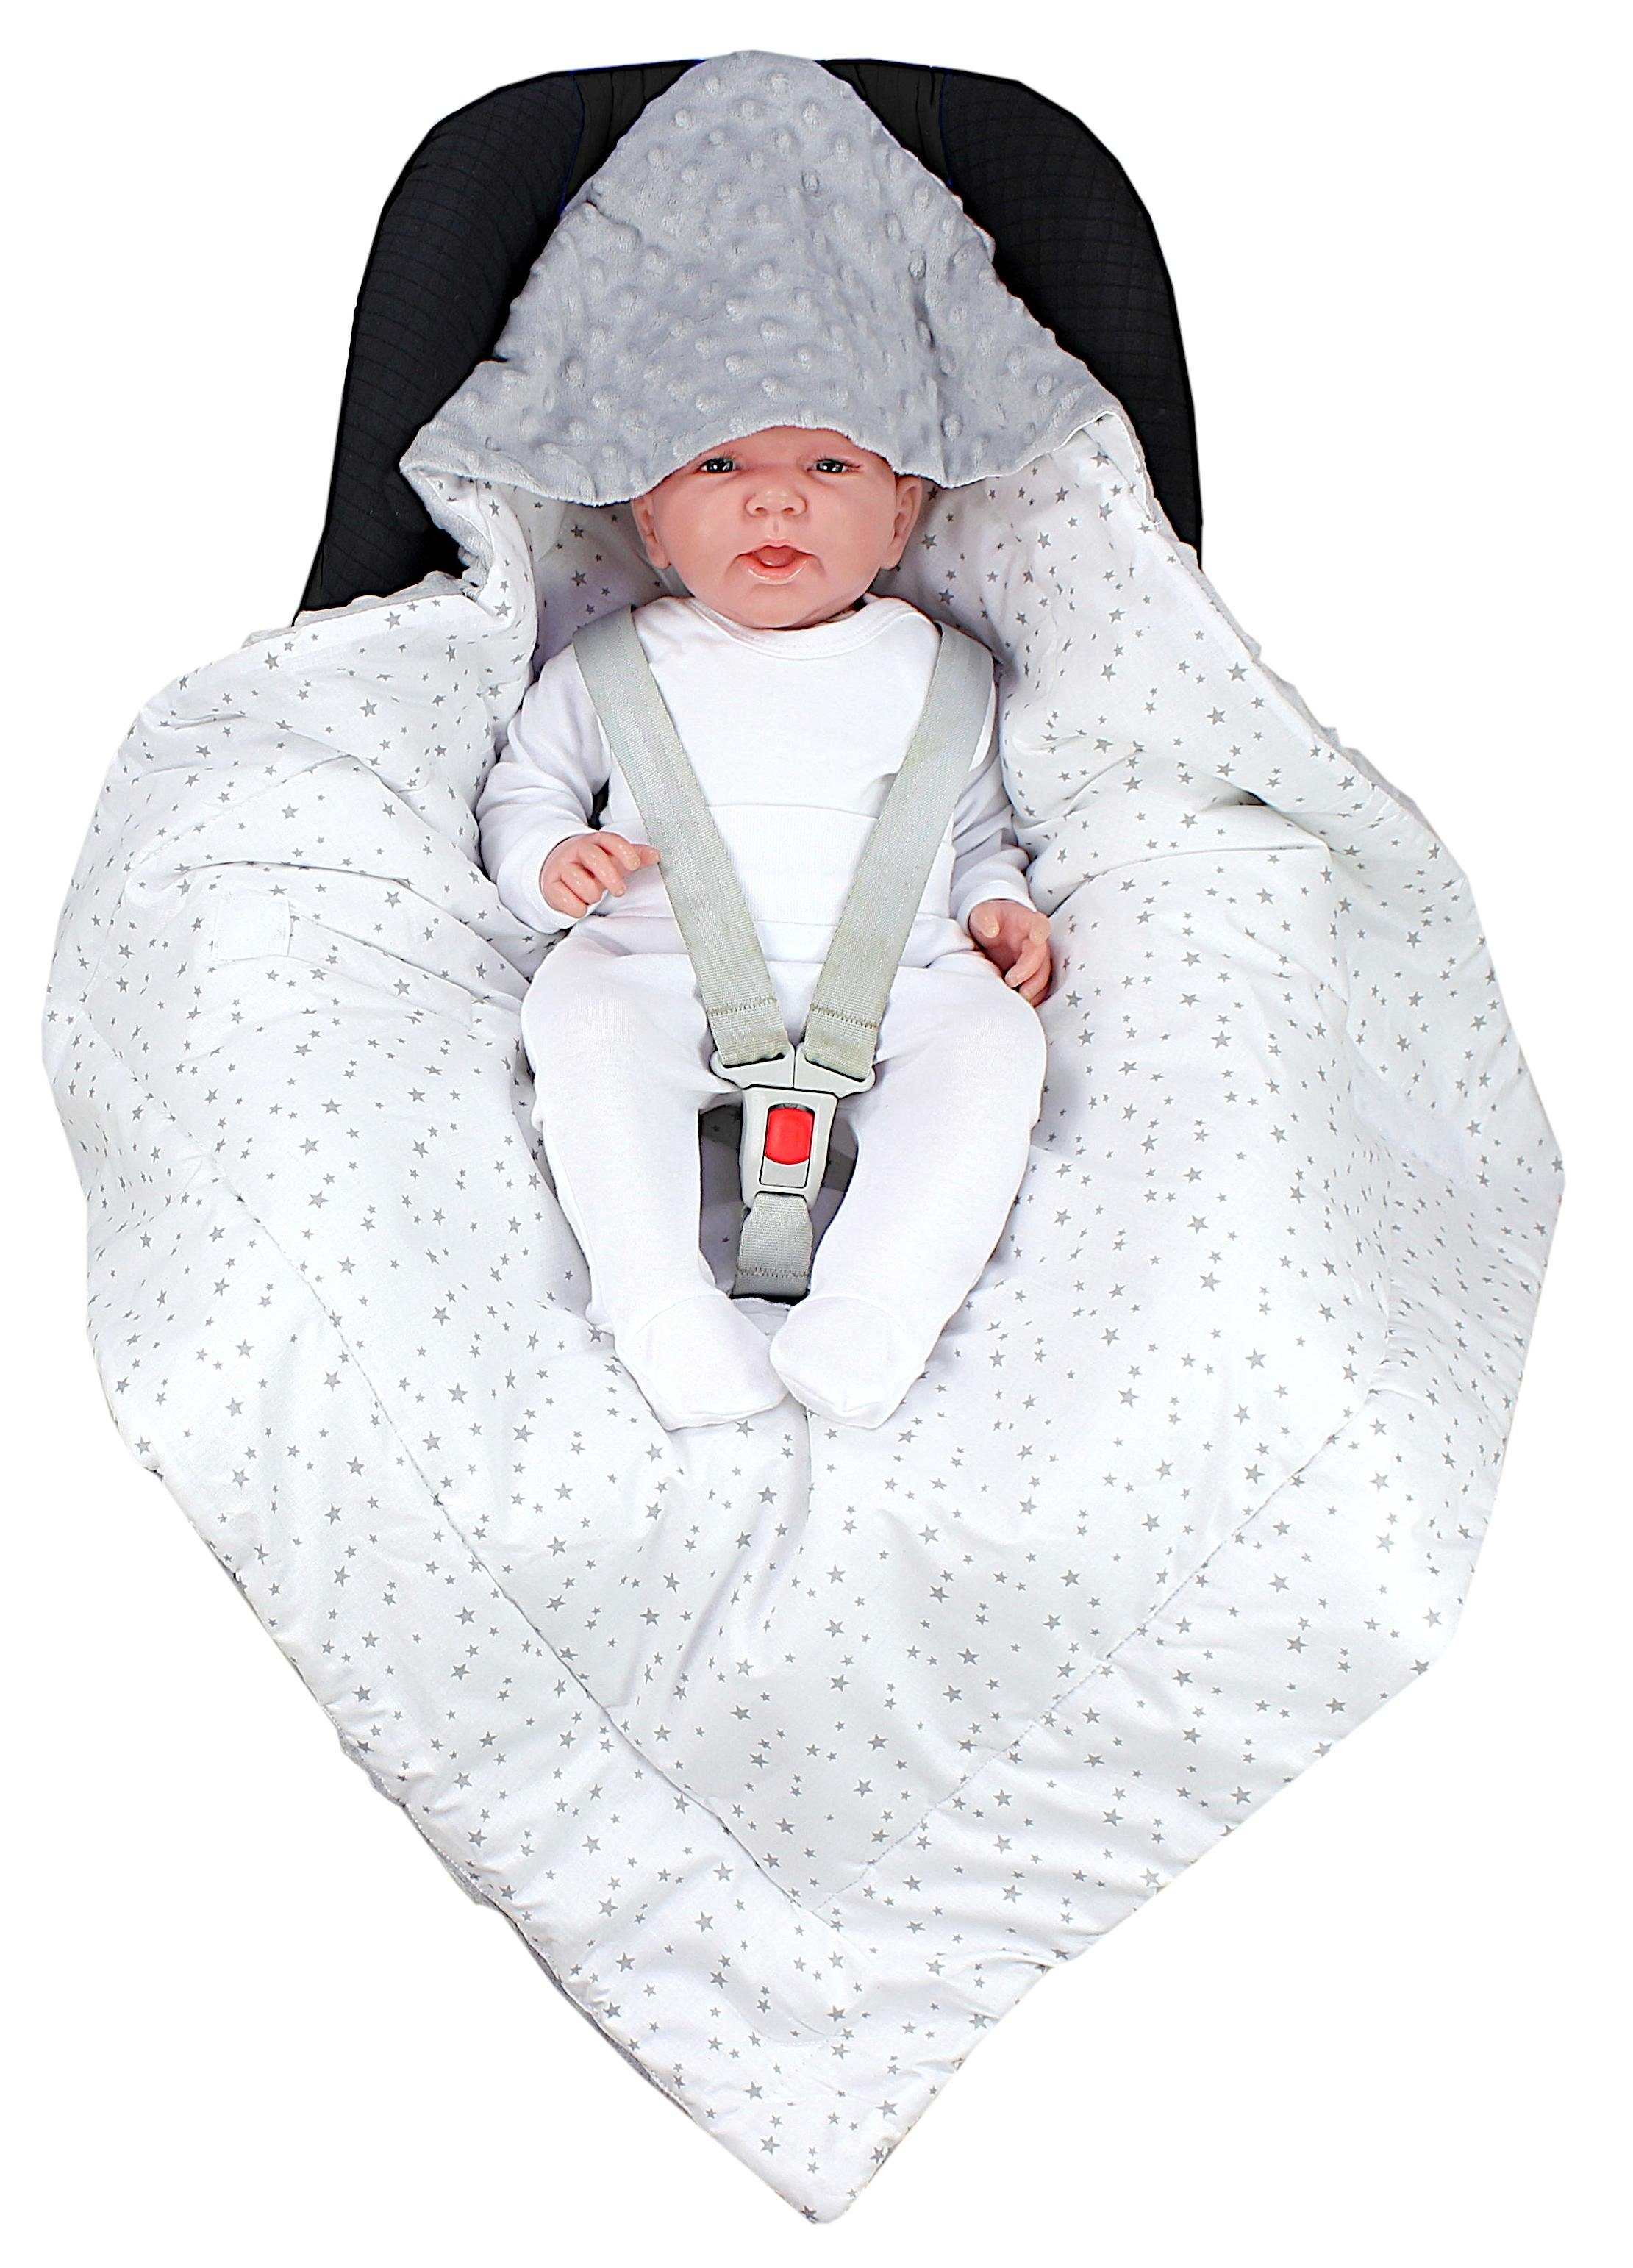 / Grau Sternbild Baby TupTam Einschlagdecke Einschlagdecke / Weiß Minky, für Wattiert Babyschale Winter